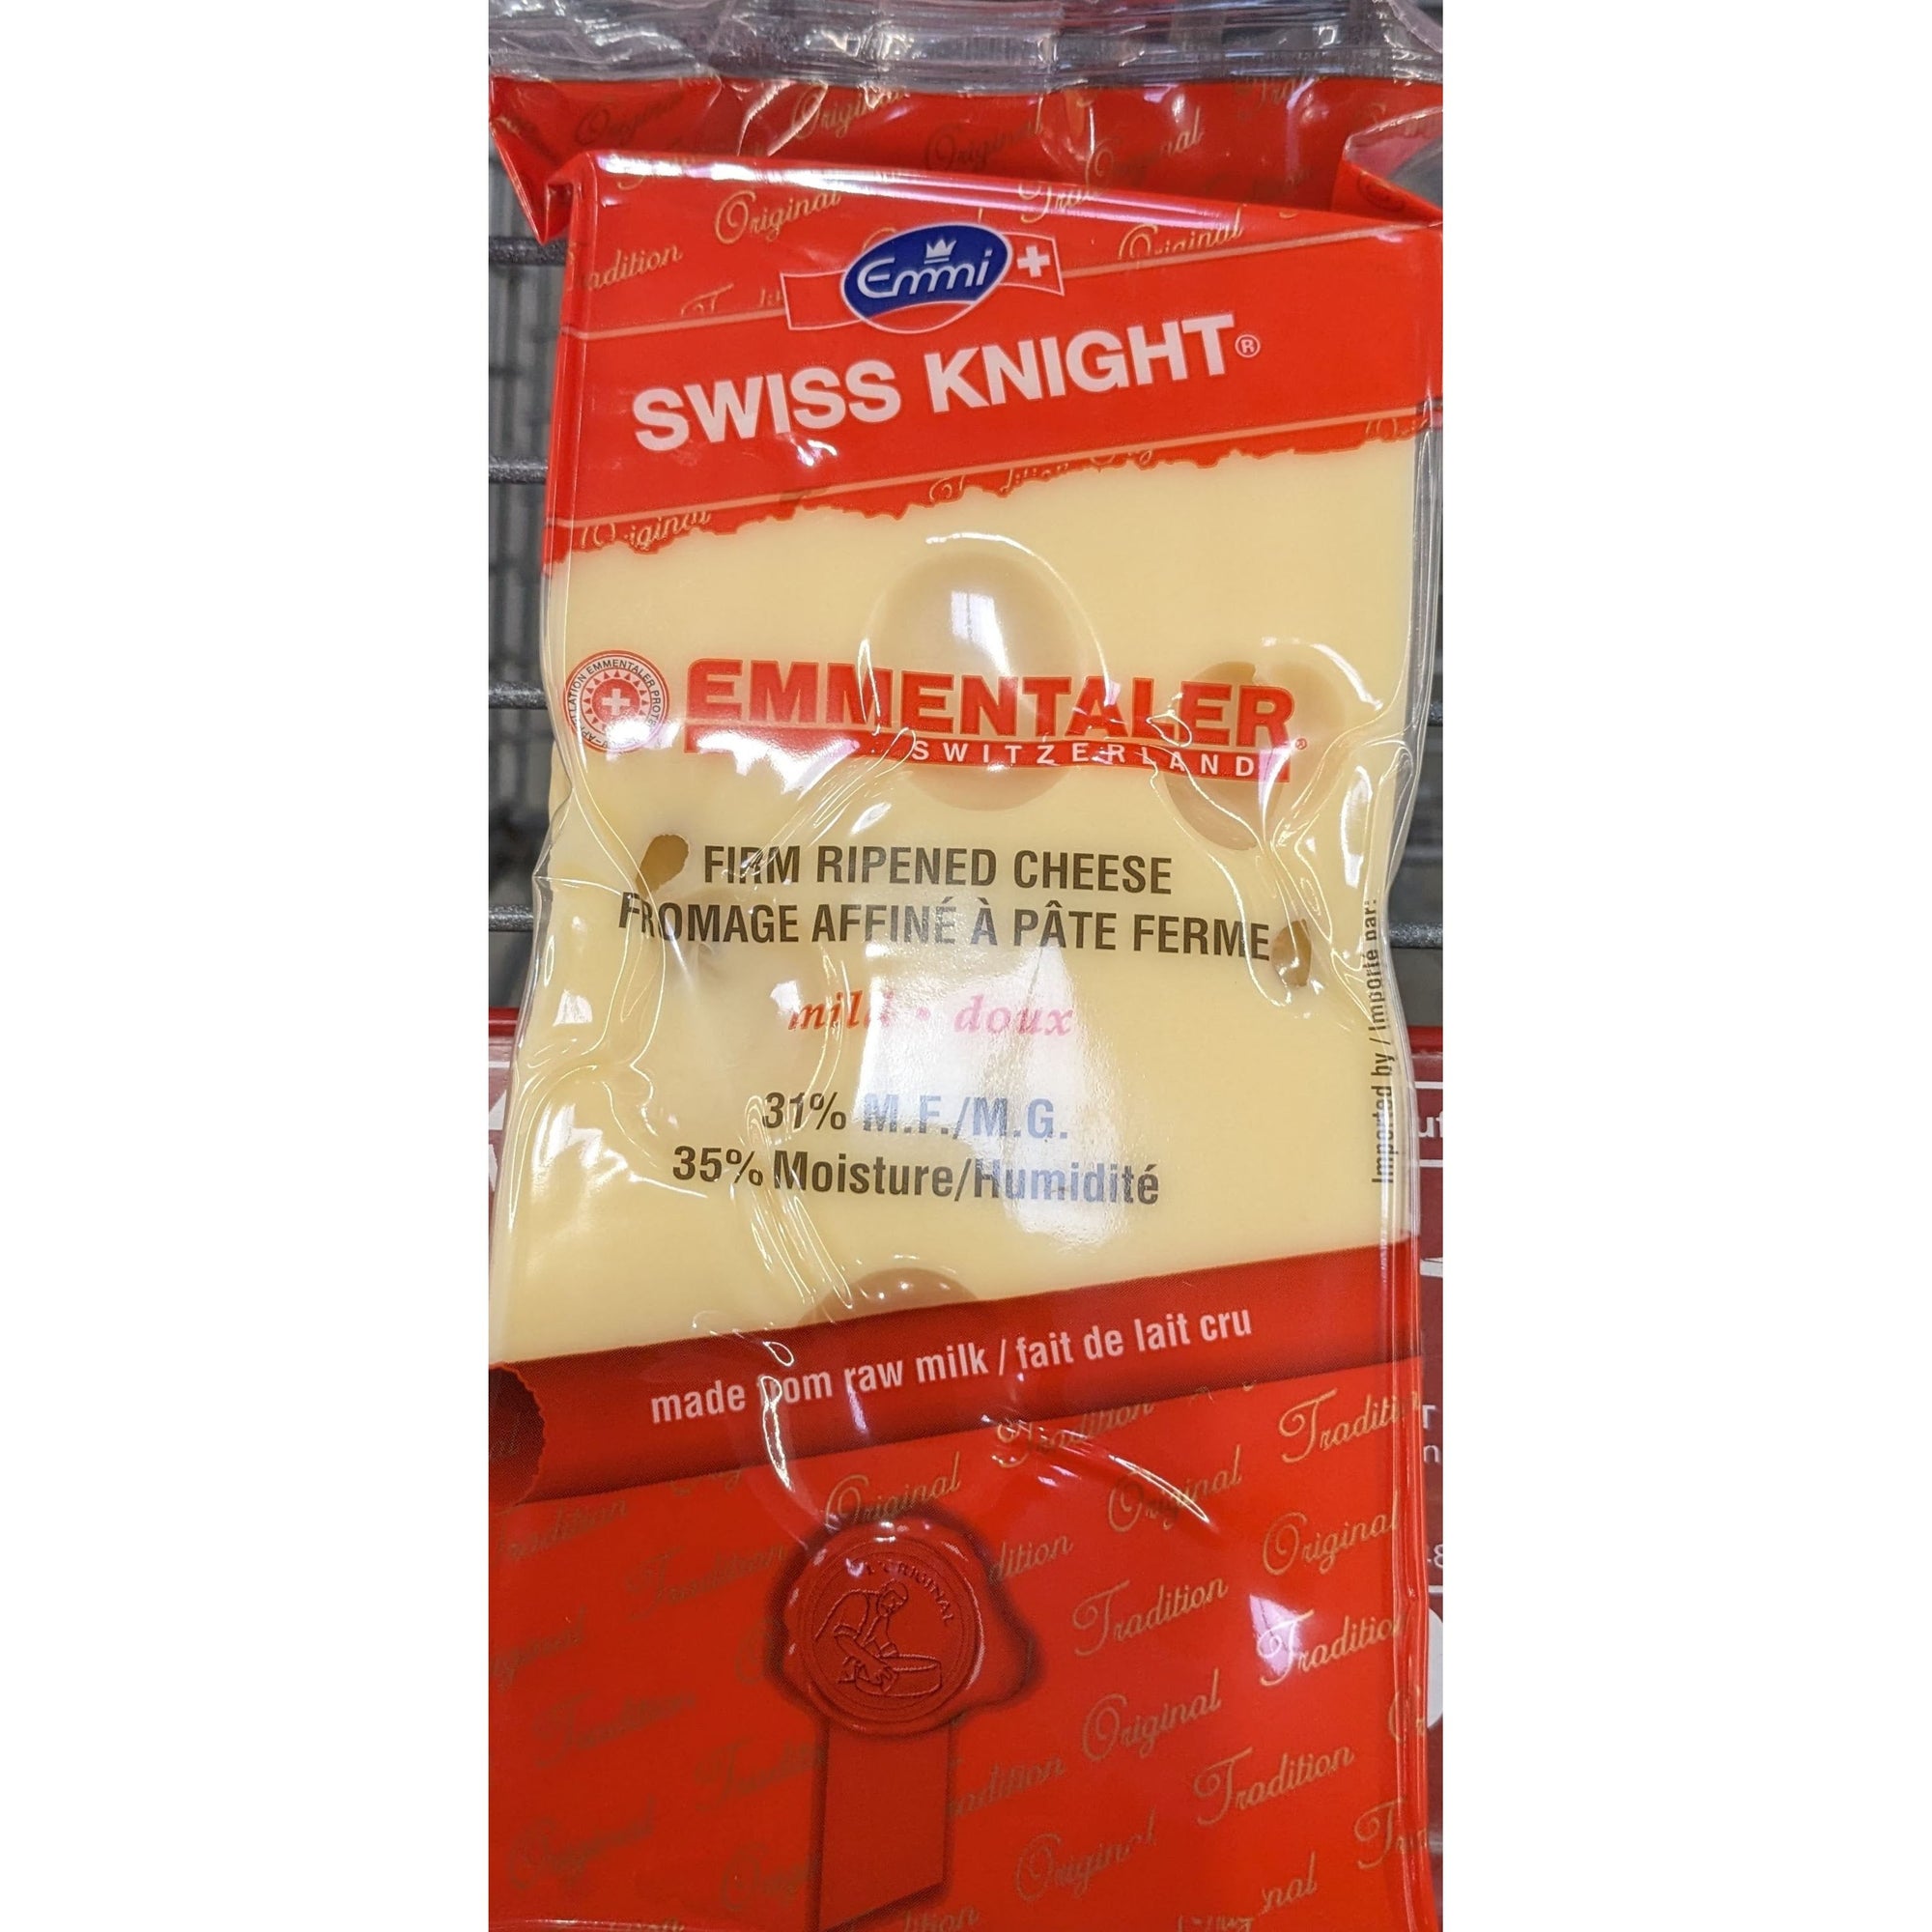 CASE LOT Swiss Knight Emmentaler 450g